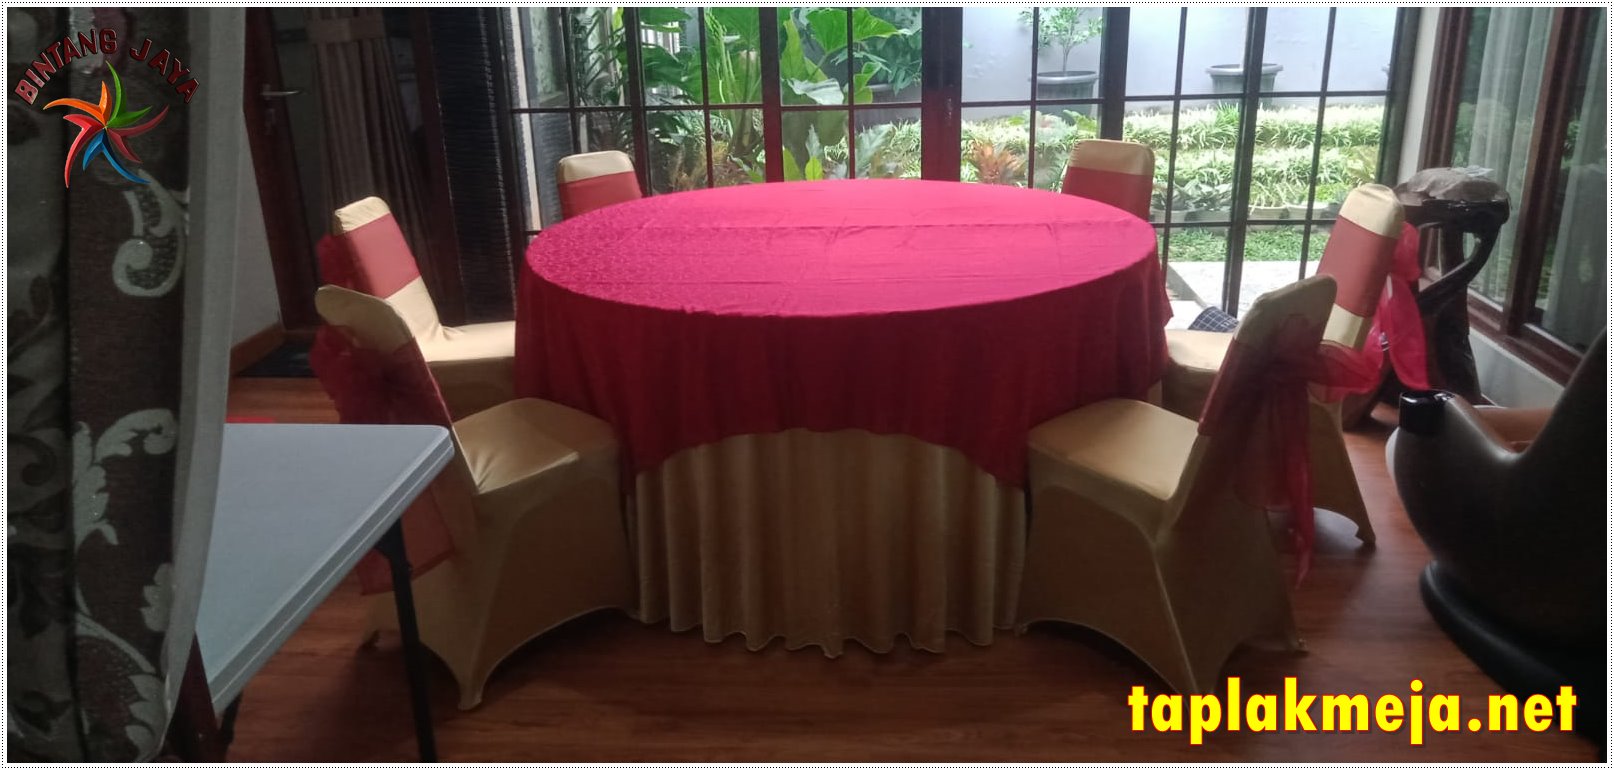 Pusat Taplak Meja Premium Murah Di Daerah Jakarta